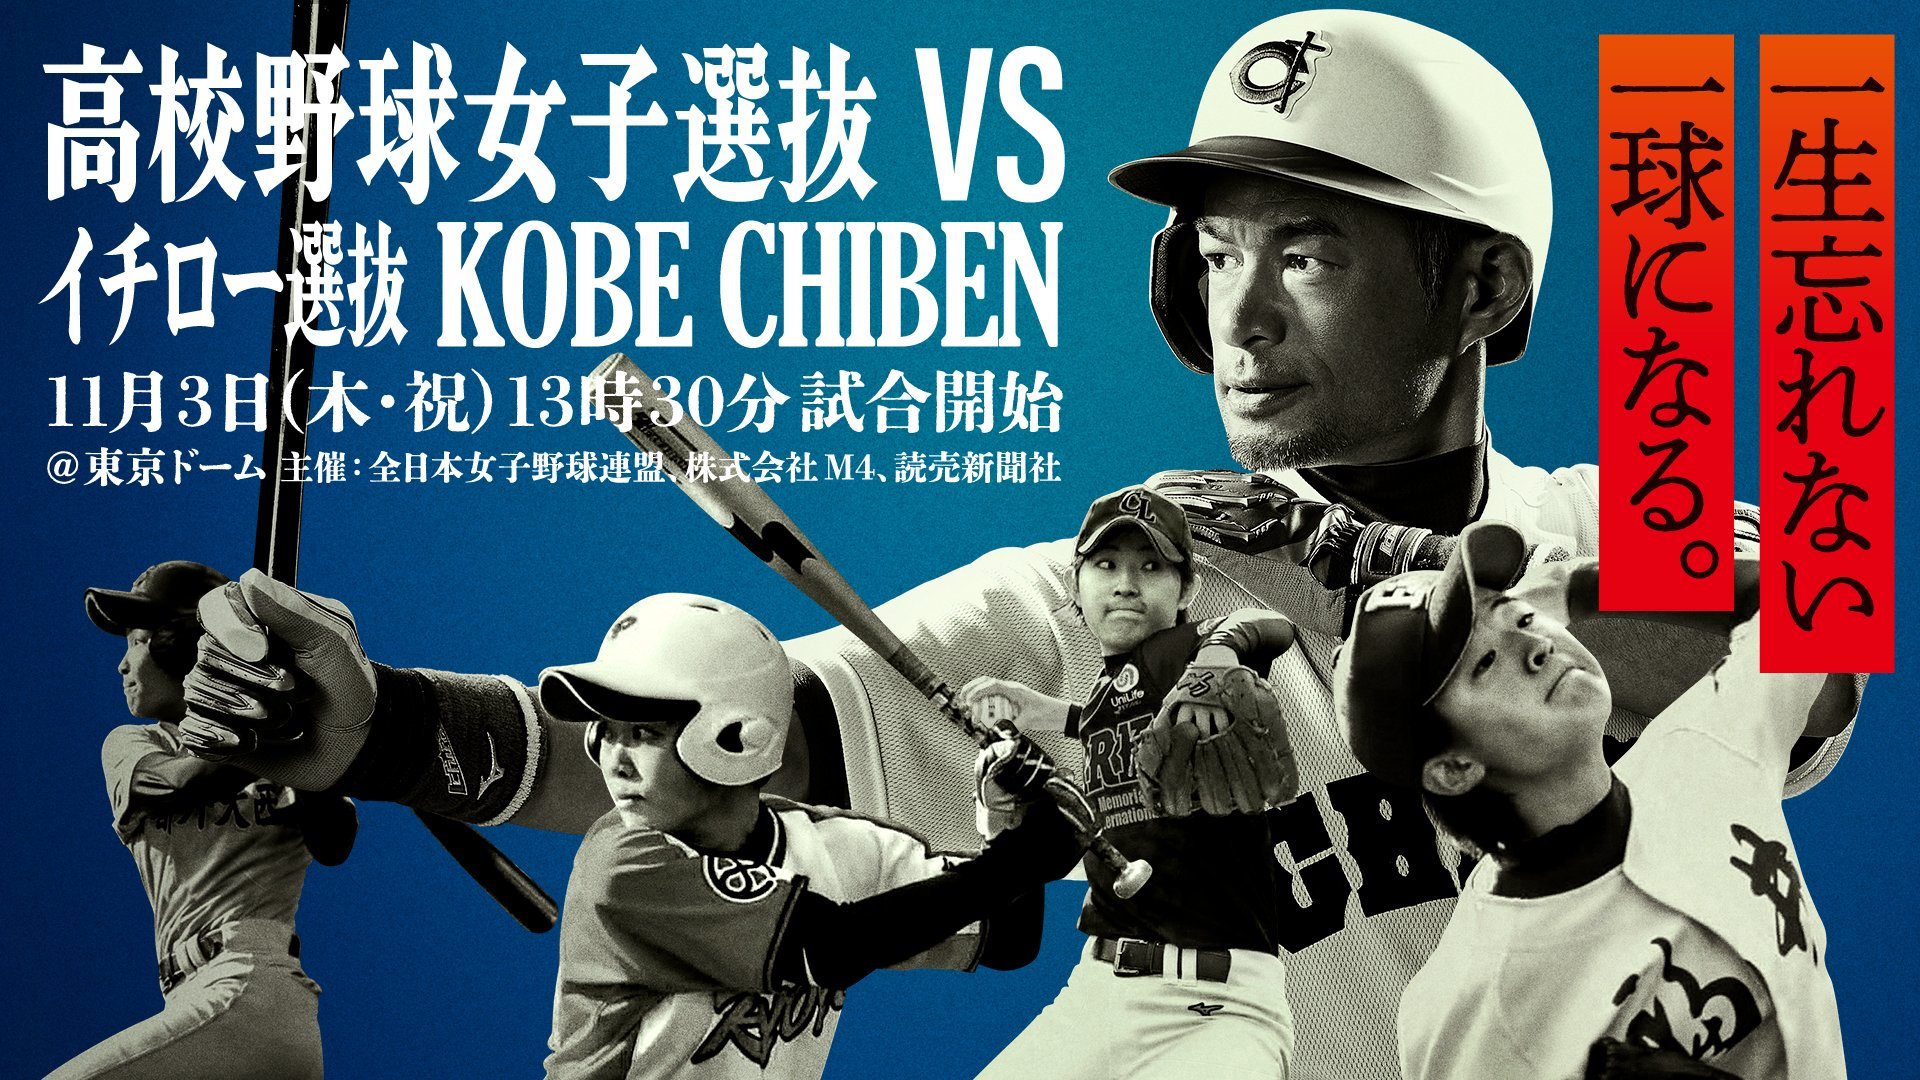 今年は東京ドームで 高校野球女子選抜 Vs イチロー選抜 Kobe Chiben のチケットは9 17発売 Spice エンタメ特化型情報メディア スパイス